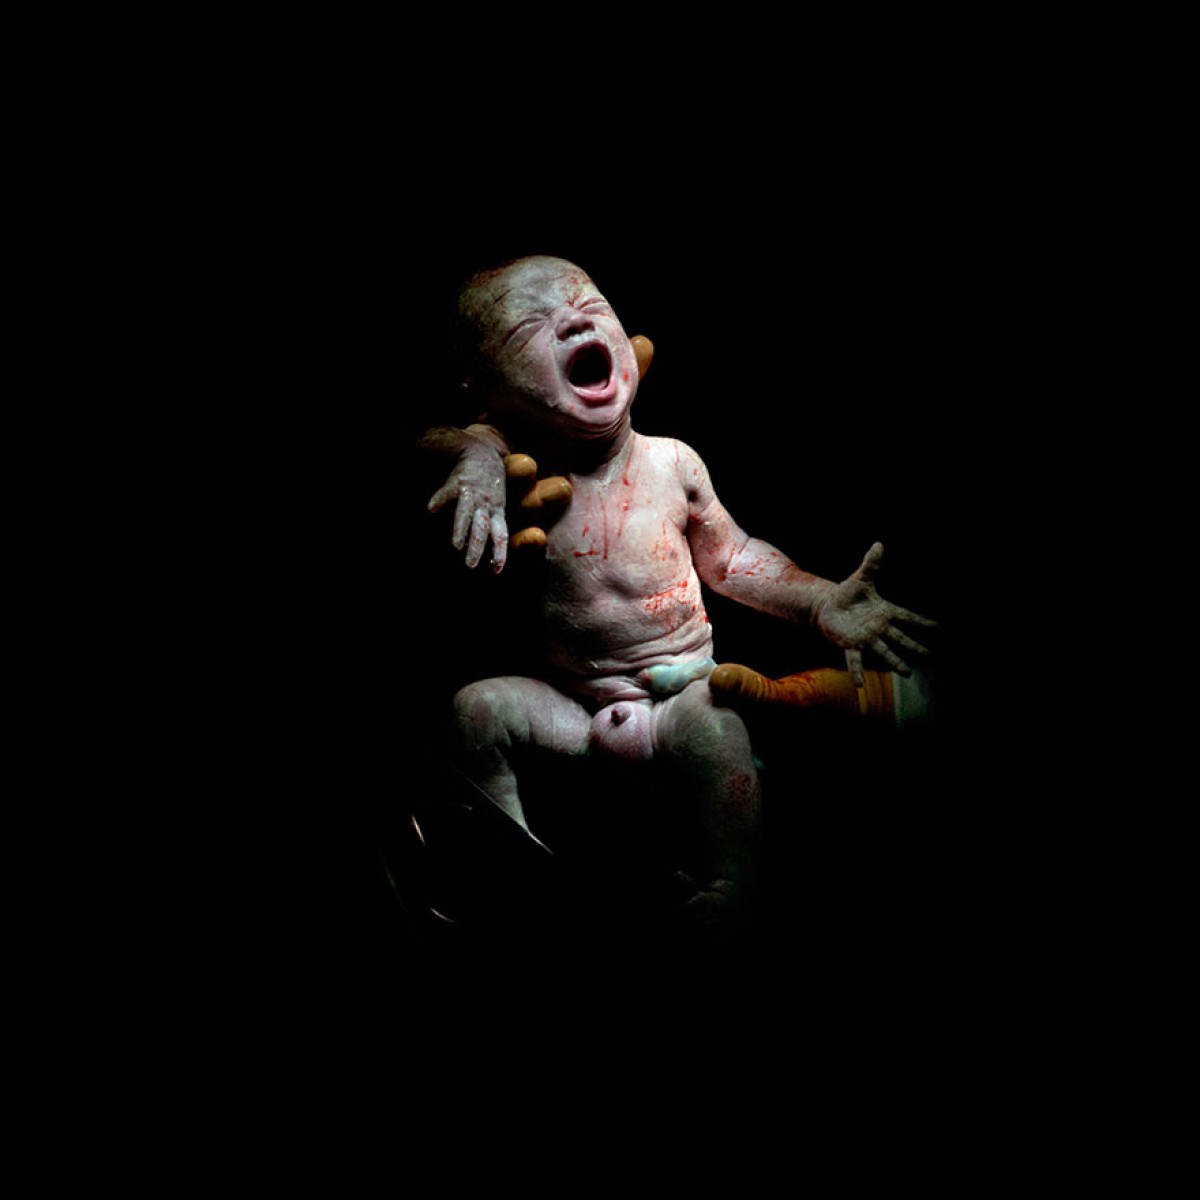 Τα πρώτα δευτερόλεπτα της ζωής τους: Φωτογραφίες νεογέννητων τη στιγμή που έρχονται στον κόσμο μας